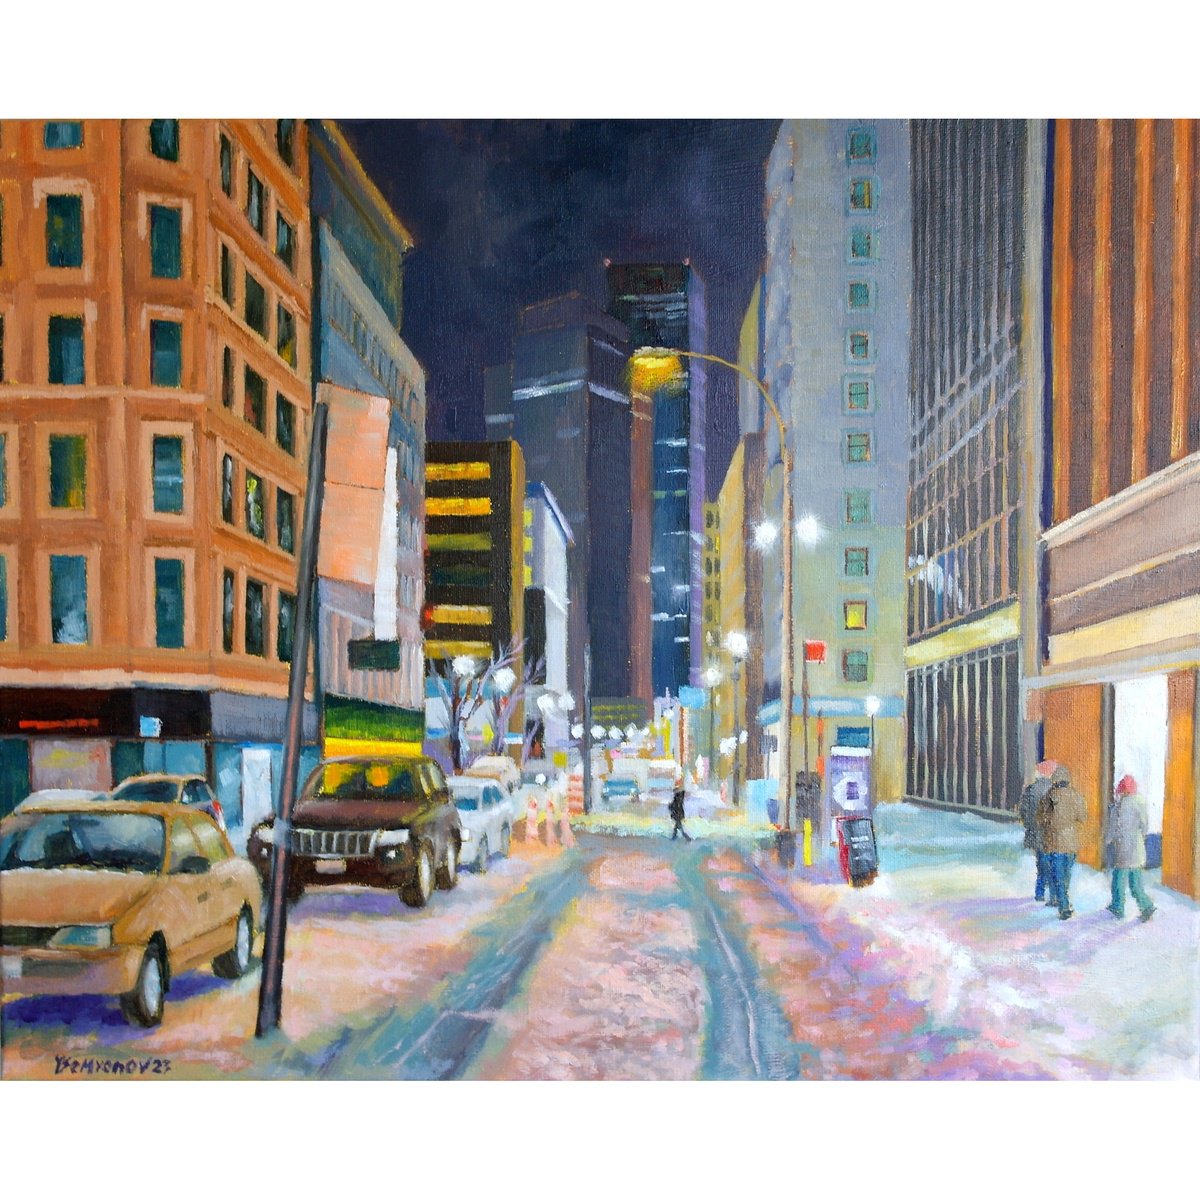 New York, Winter Night Street by Juri Semjonov